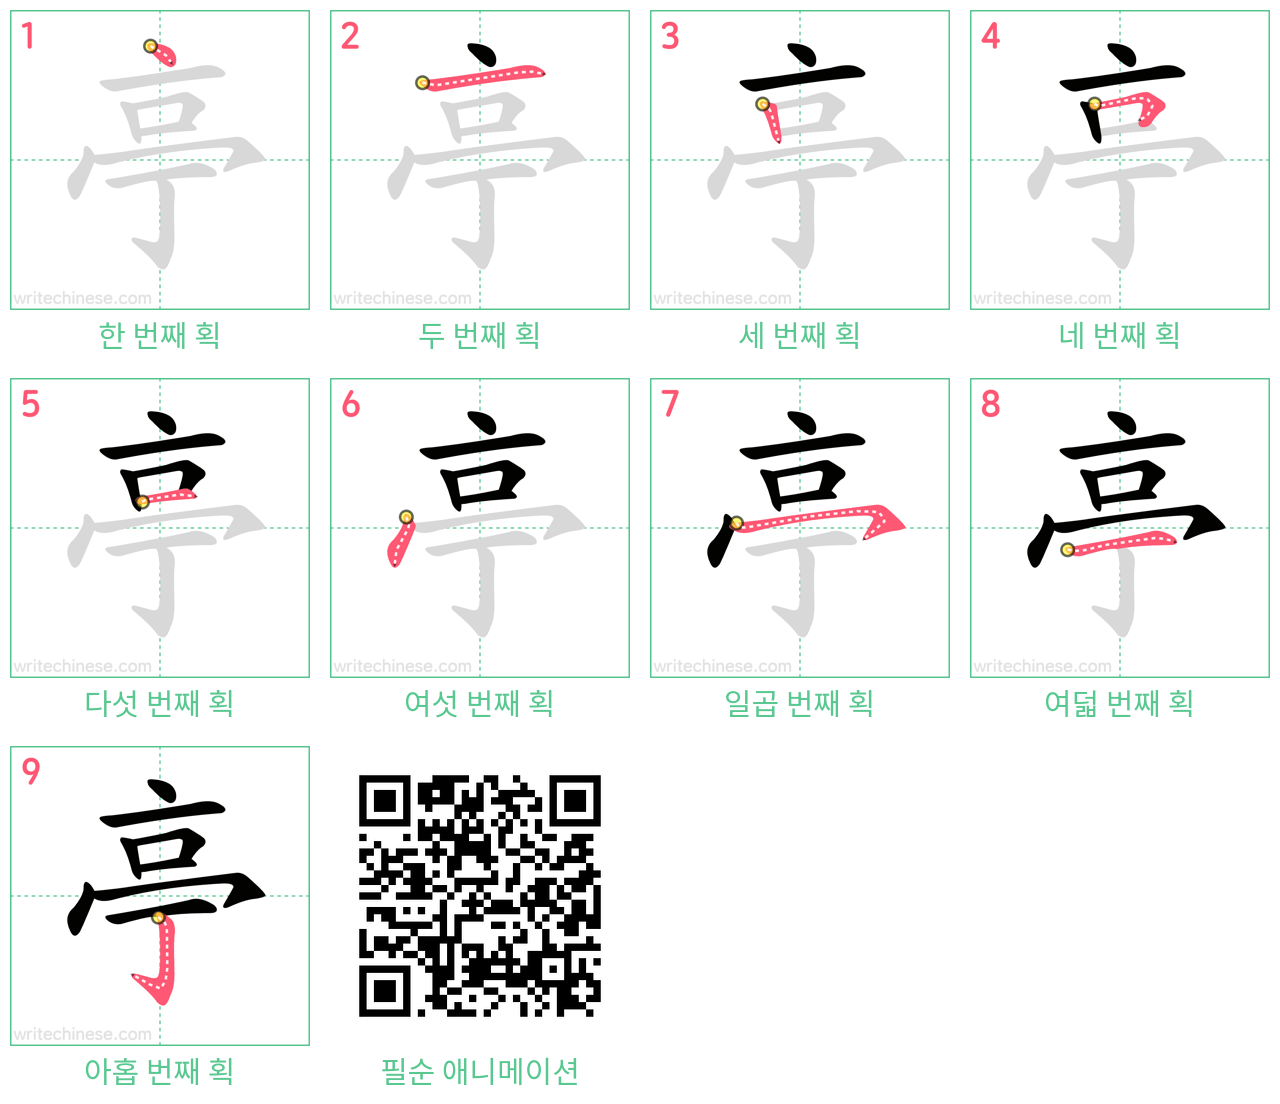 亭 step-by-step stroke order diagrams